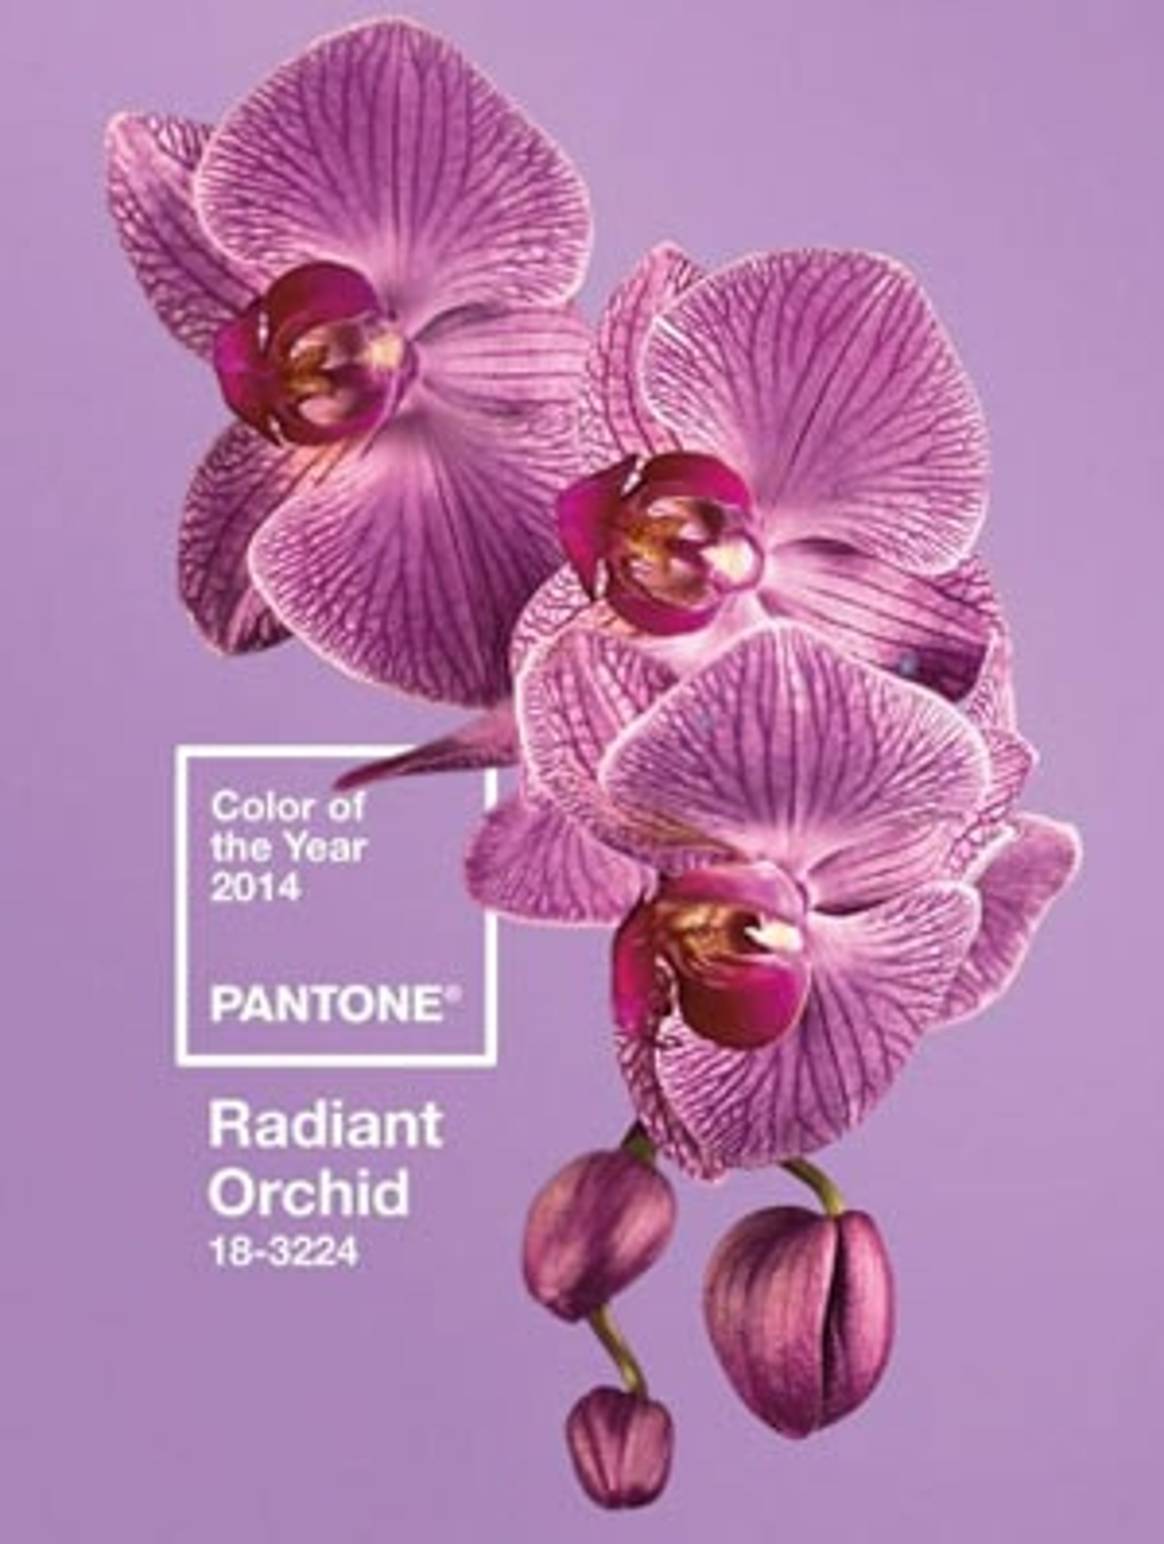 Orquídea Radiante: el color de moda del 2014